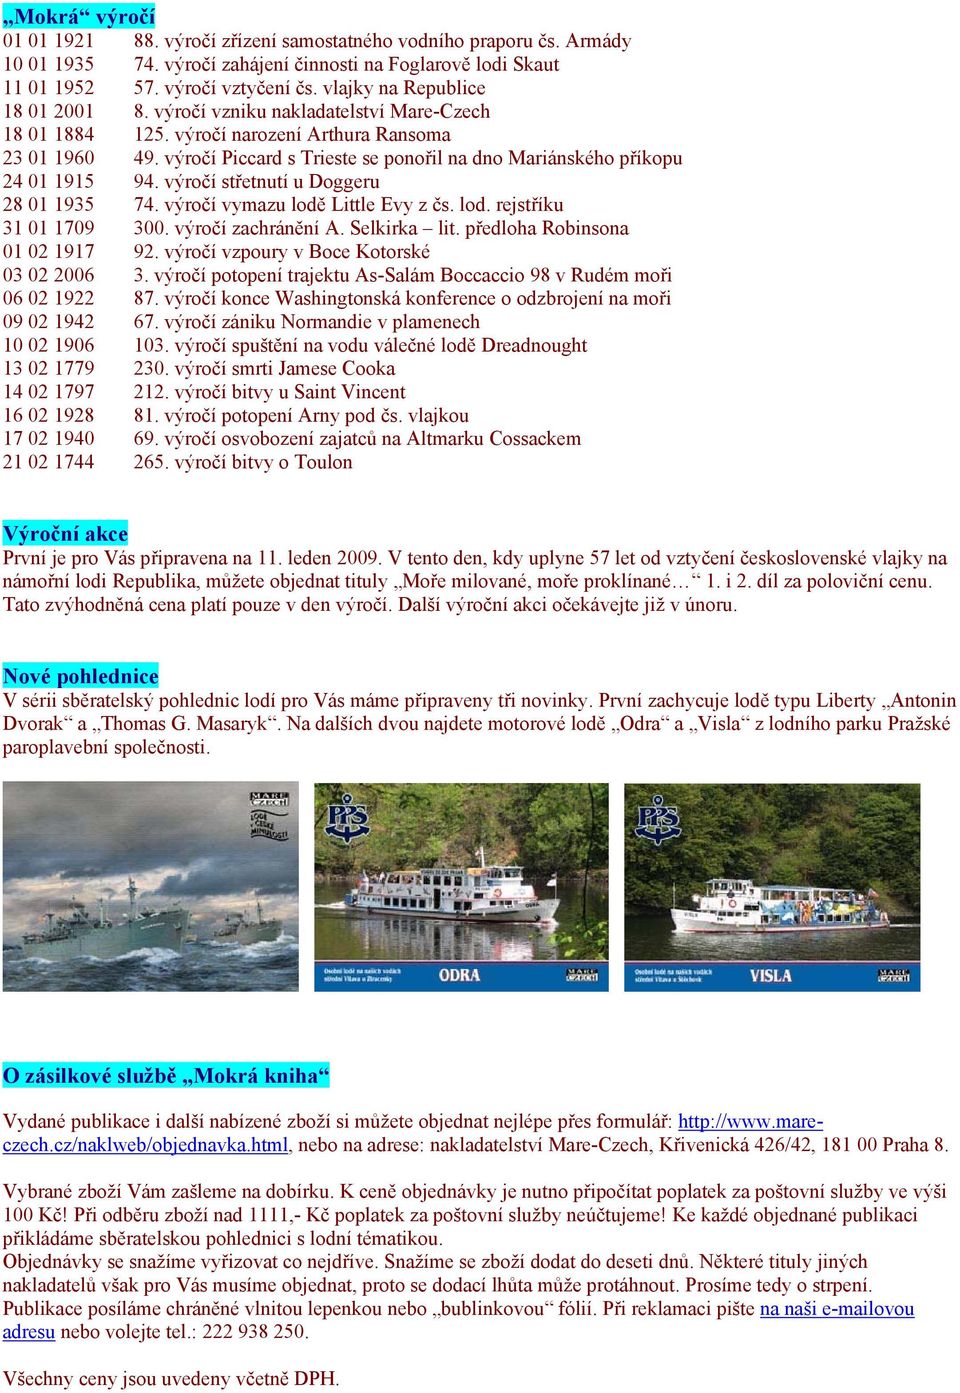 výročí Piccard s Trieste se ponořil na dno Mariánského příkopu 24 01 1915 94. výročí střetnutí u Doggeru 28 01 1935 74. výročí vymazu lodě Little Evy z čs. lod. rejstříku 31 01 1709 300.